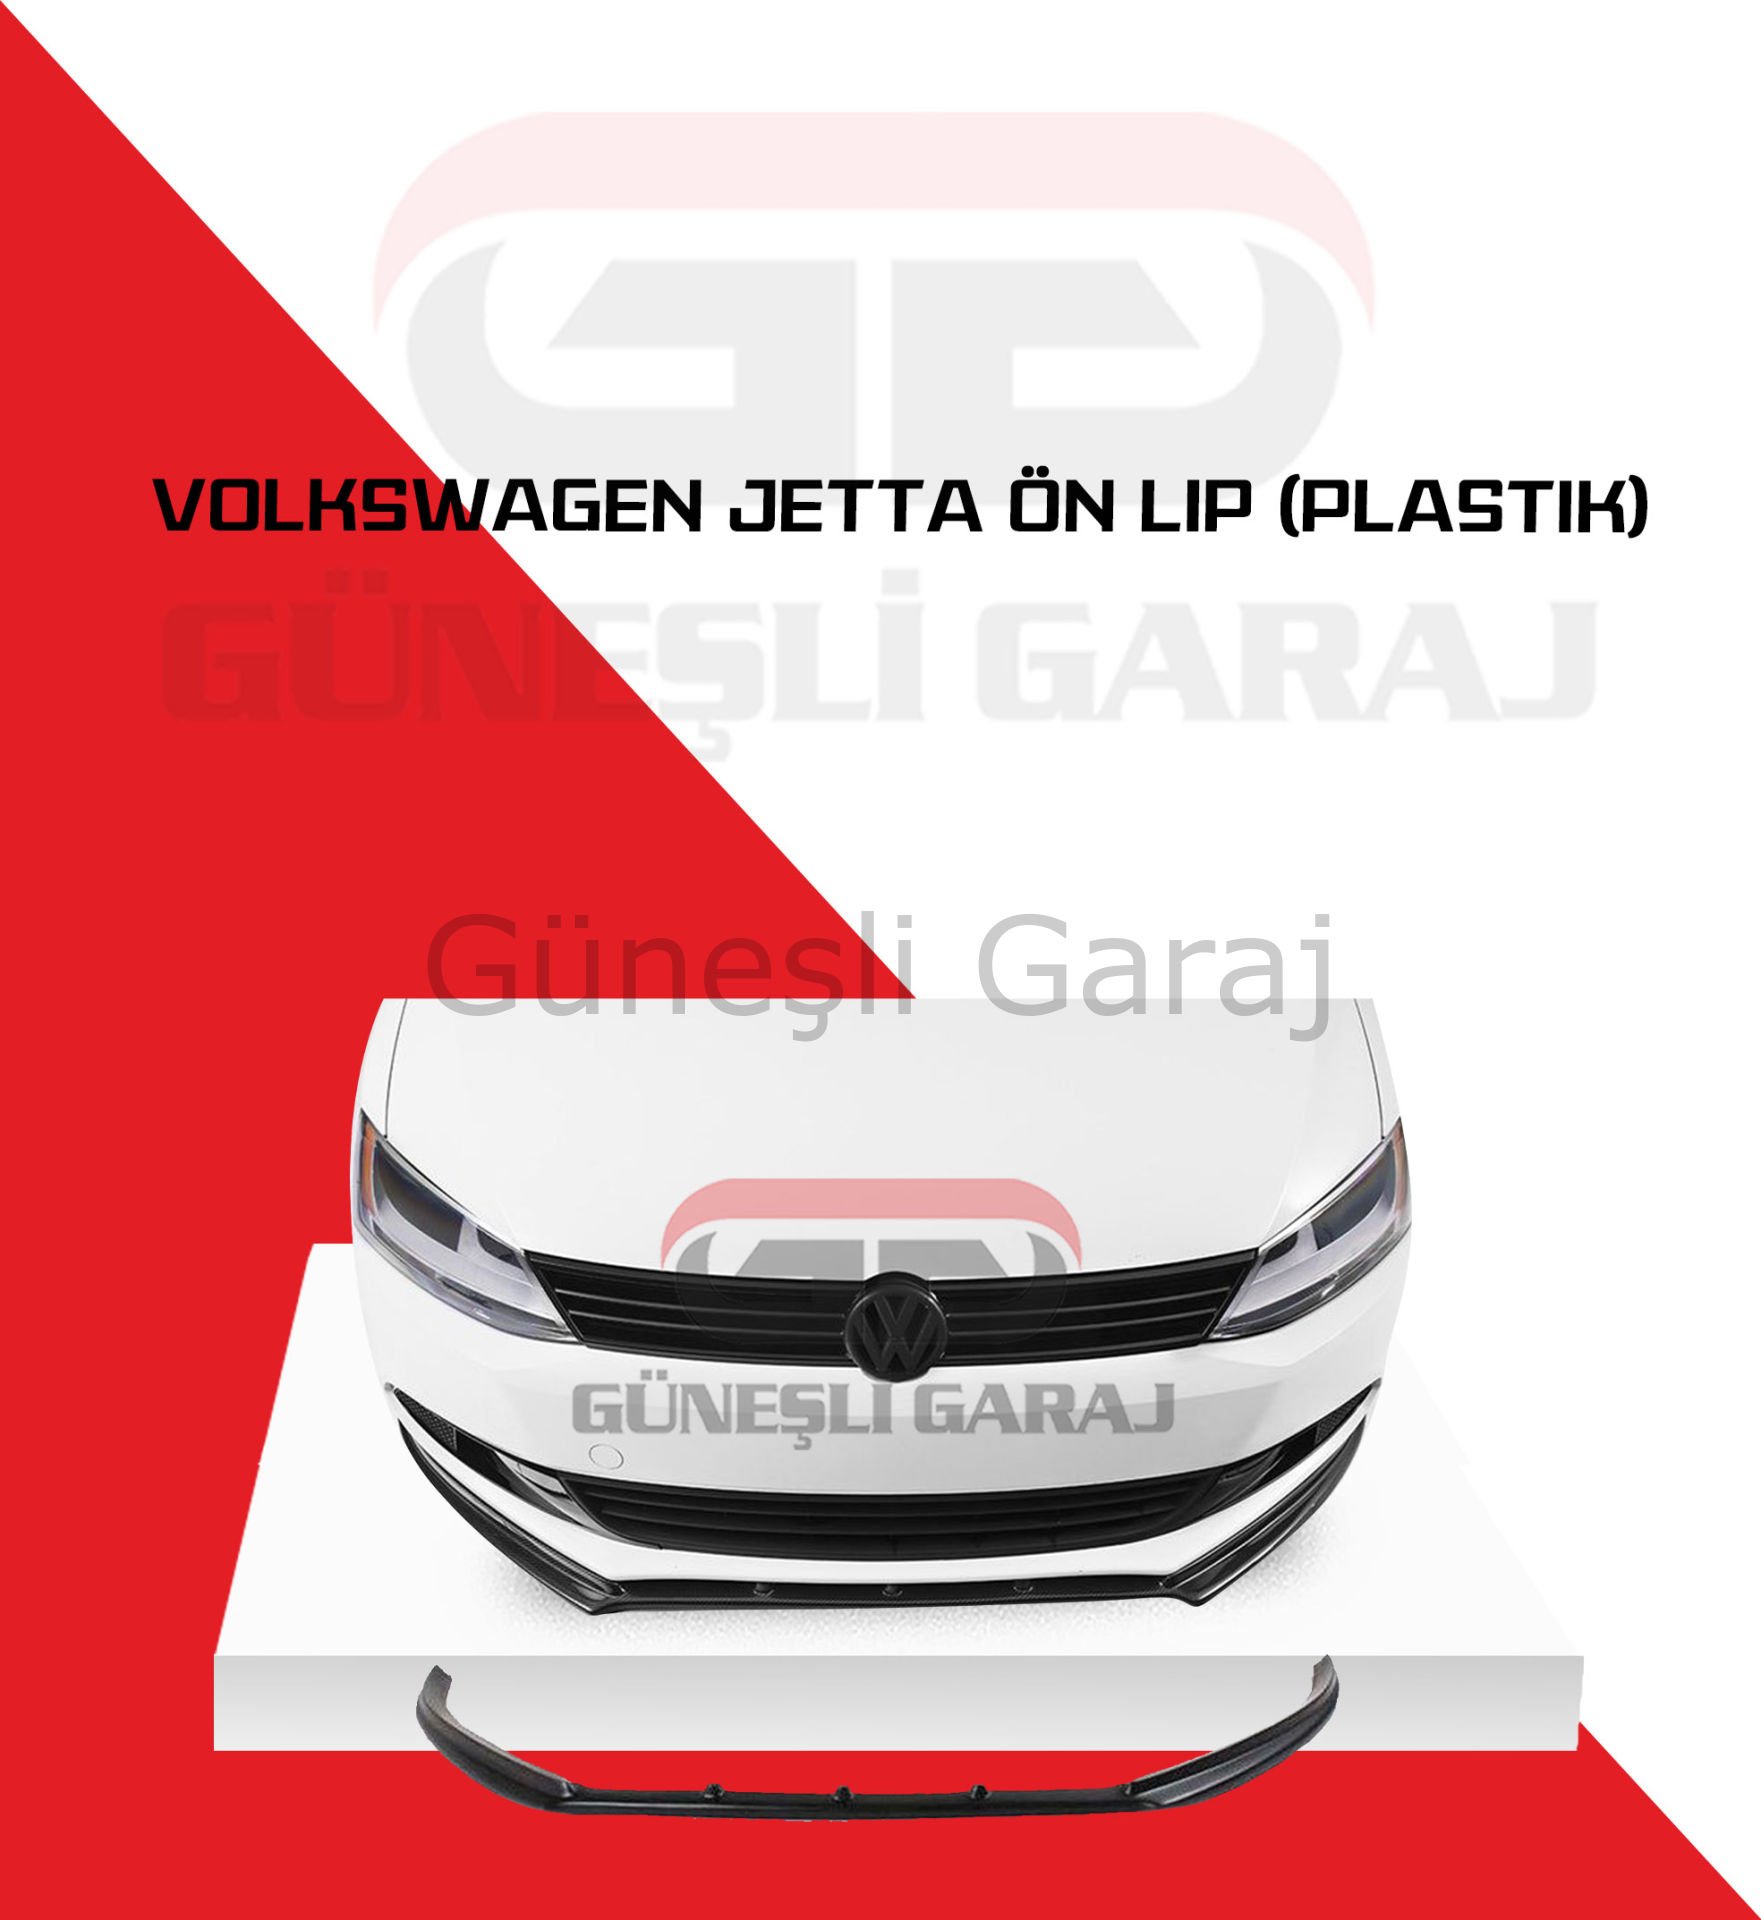 Volkswagen Jetta Ön Lip (Plastik)